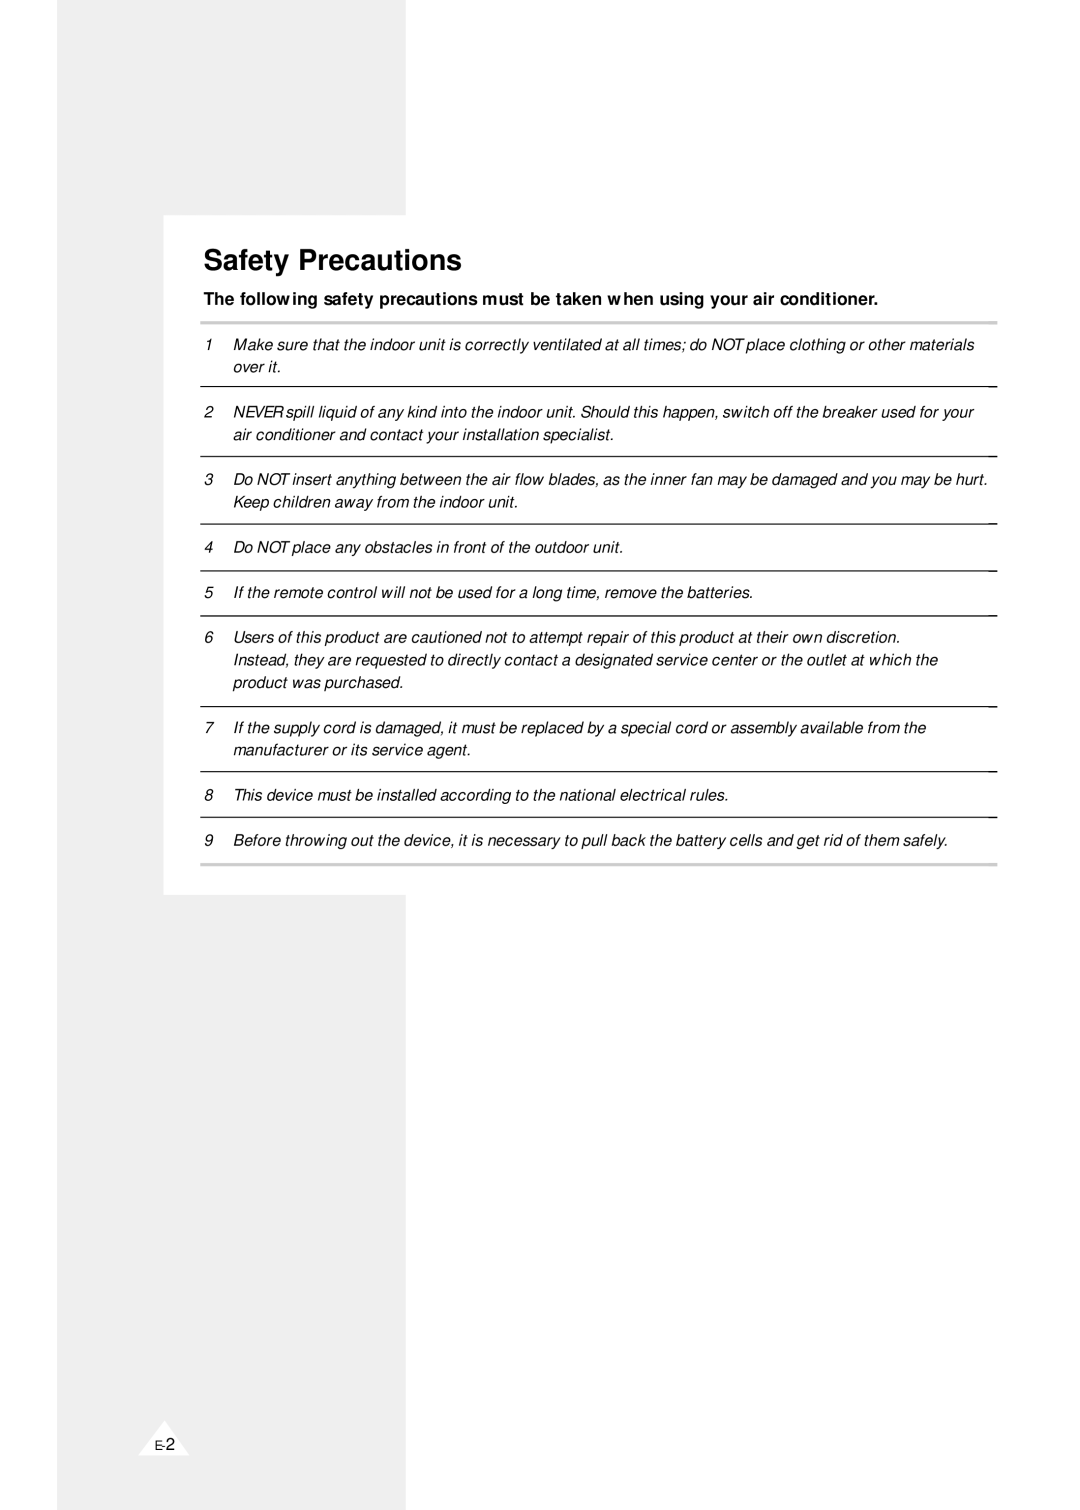 Samsung AS09A1(A2)VE/B, AS090VE/D, AS091VE/D, AS09D1(D2)VD, AS09A1(A2)VA, AS07A1(A2)VA, AS07A1(A2)VE/B manual Safety Precautions 